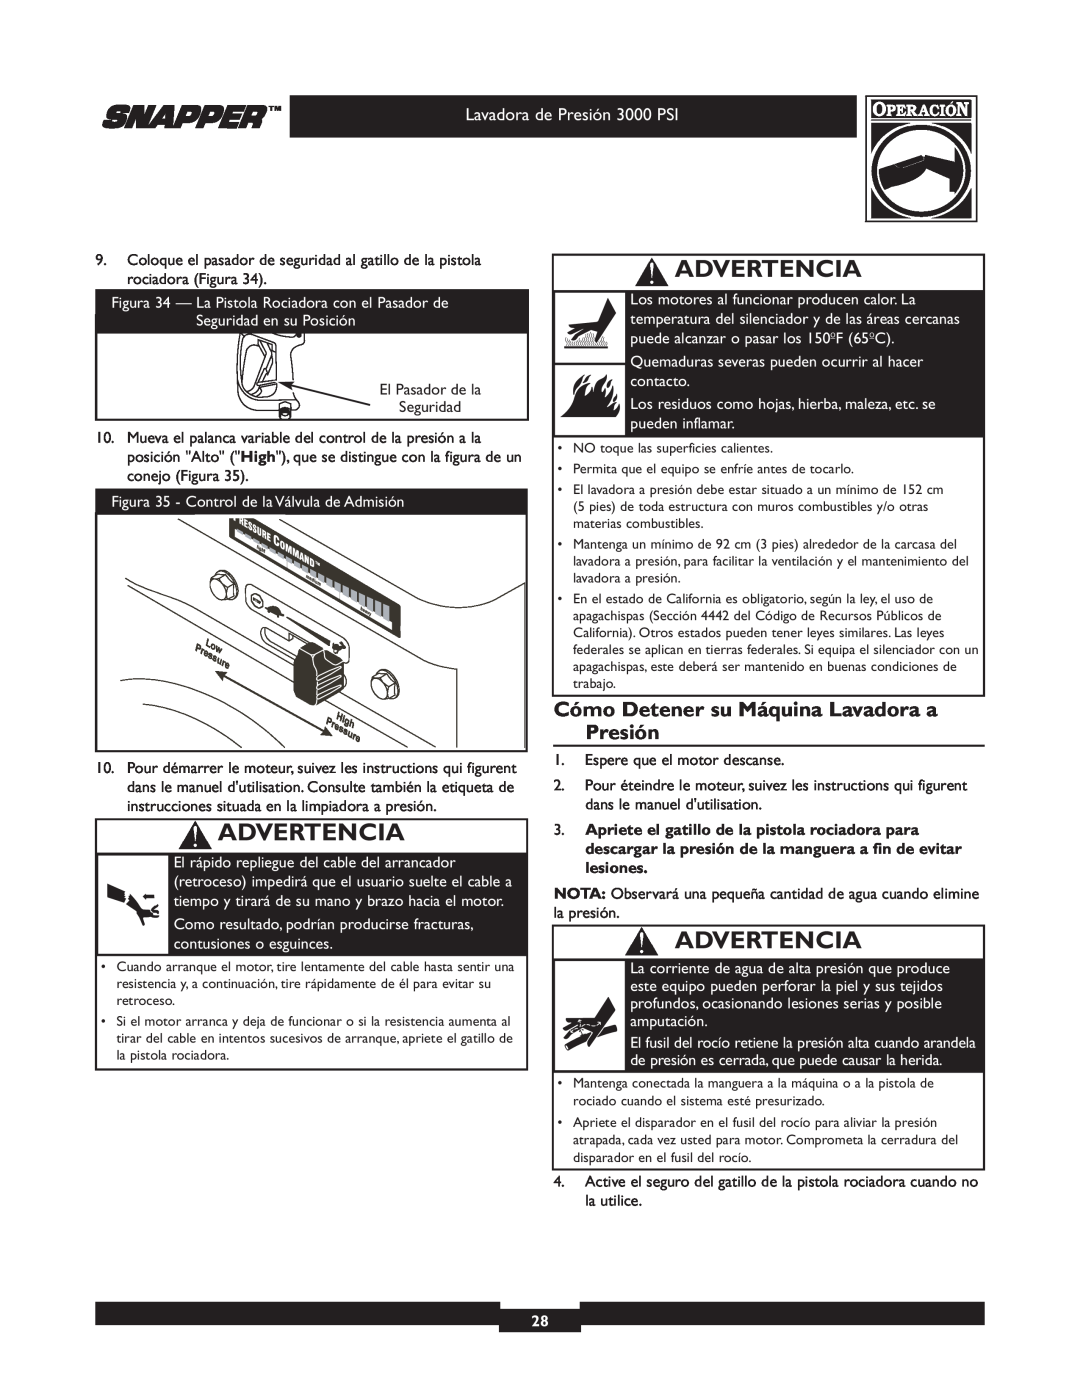 Snapper 020231 owner manual Cómo Detener su Máquina Lavadora a Presión, Advertencia, Lavadora de Presión 3000 PSI 